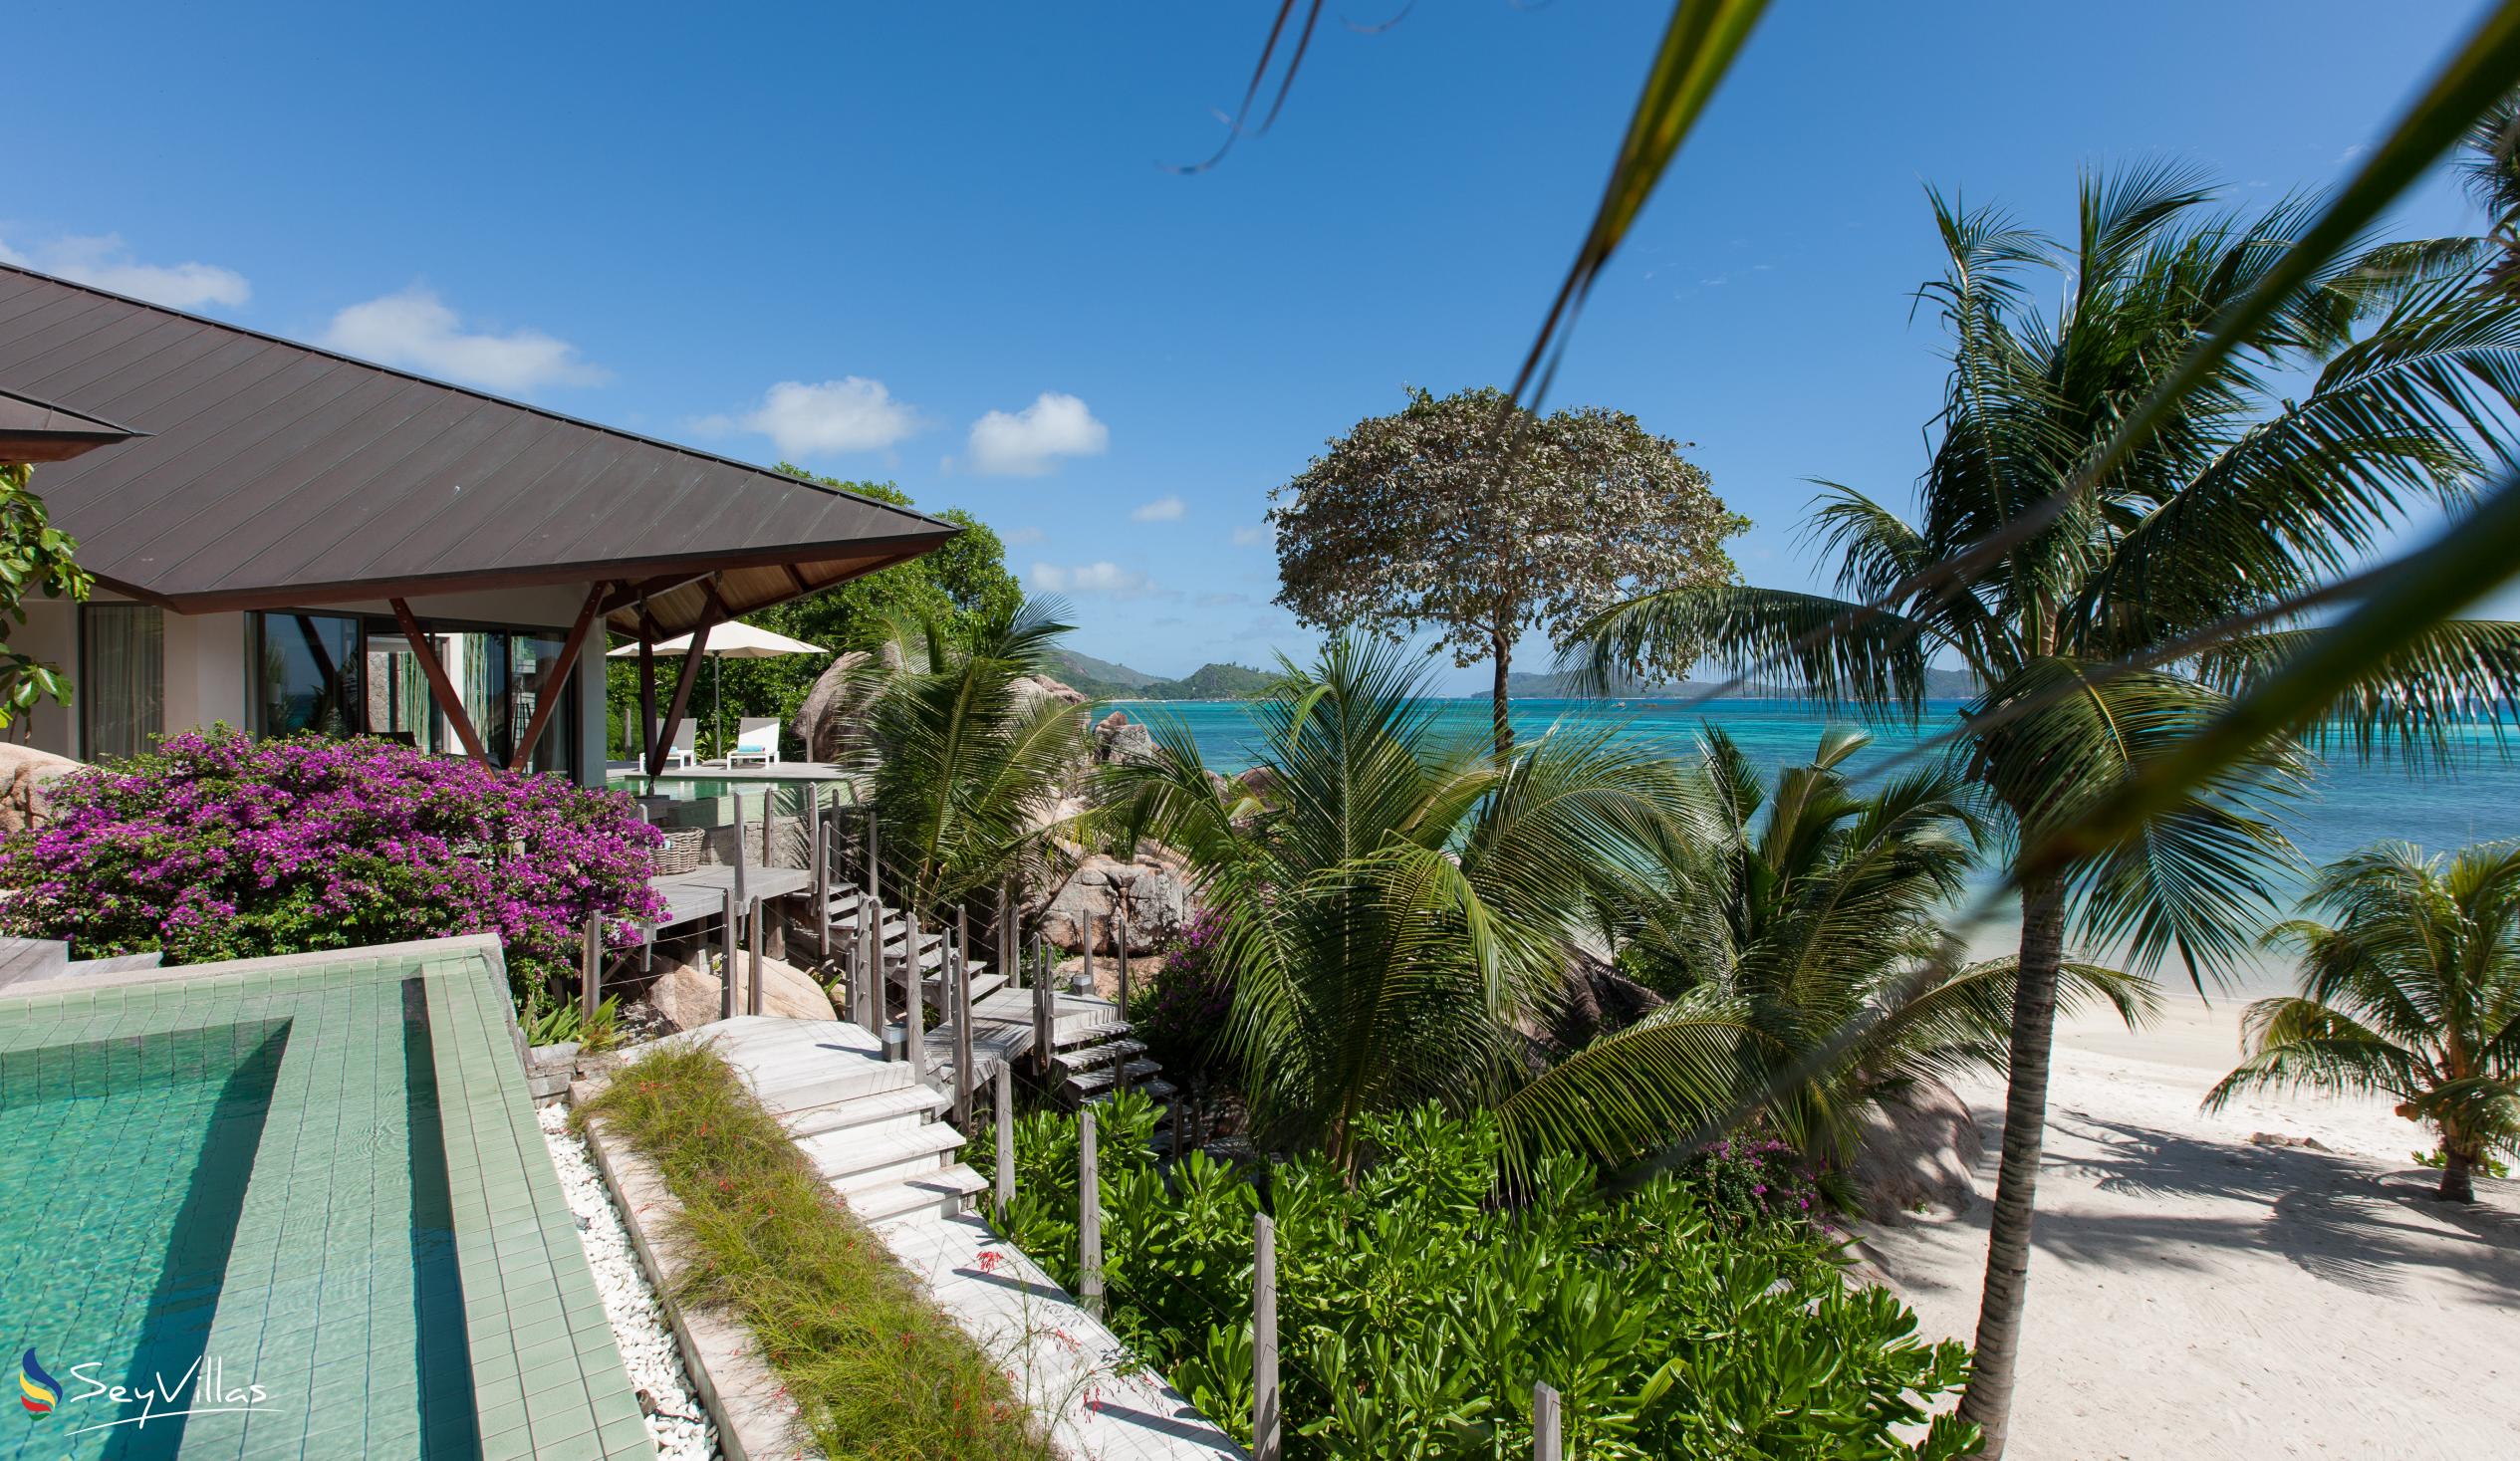 Foto 7: Villa Deckenia - Aussenbereich - Praslin (Seychellen)